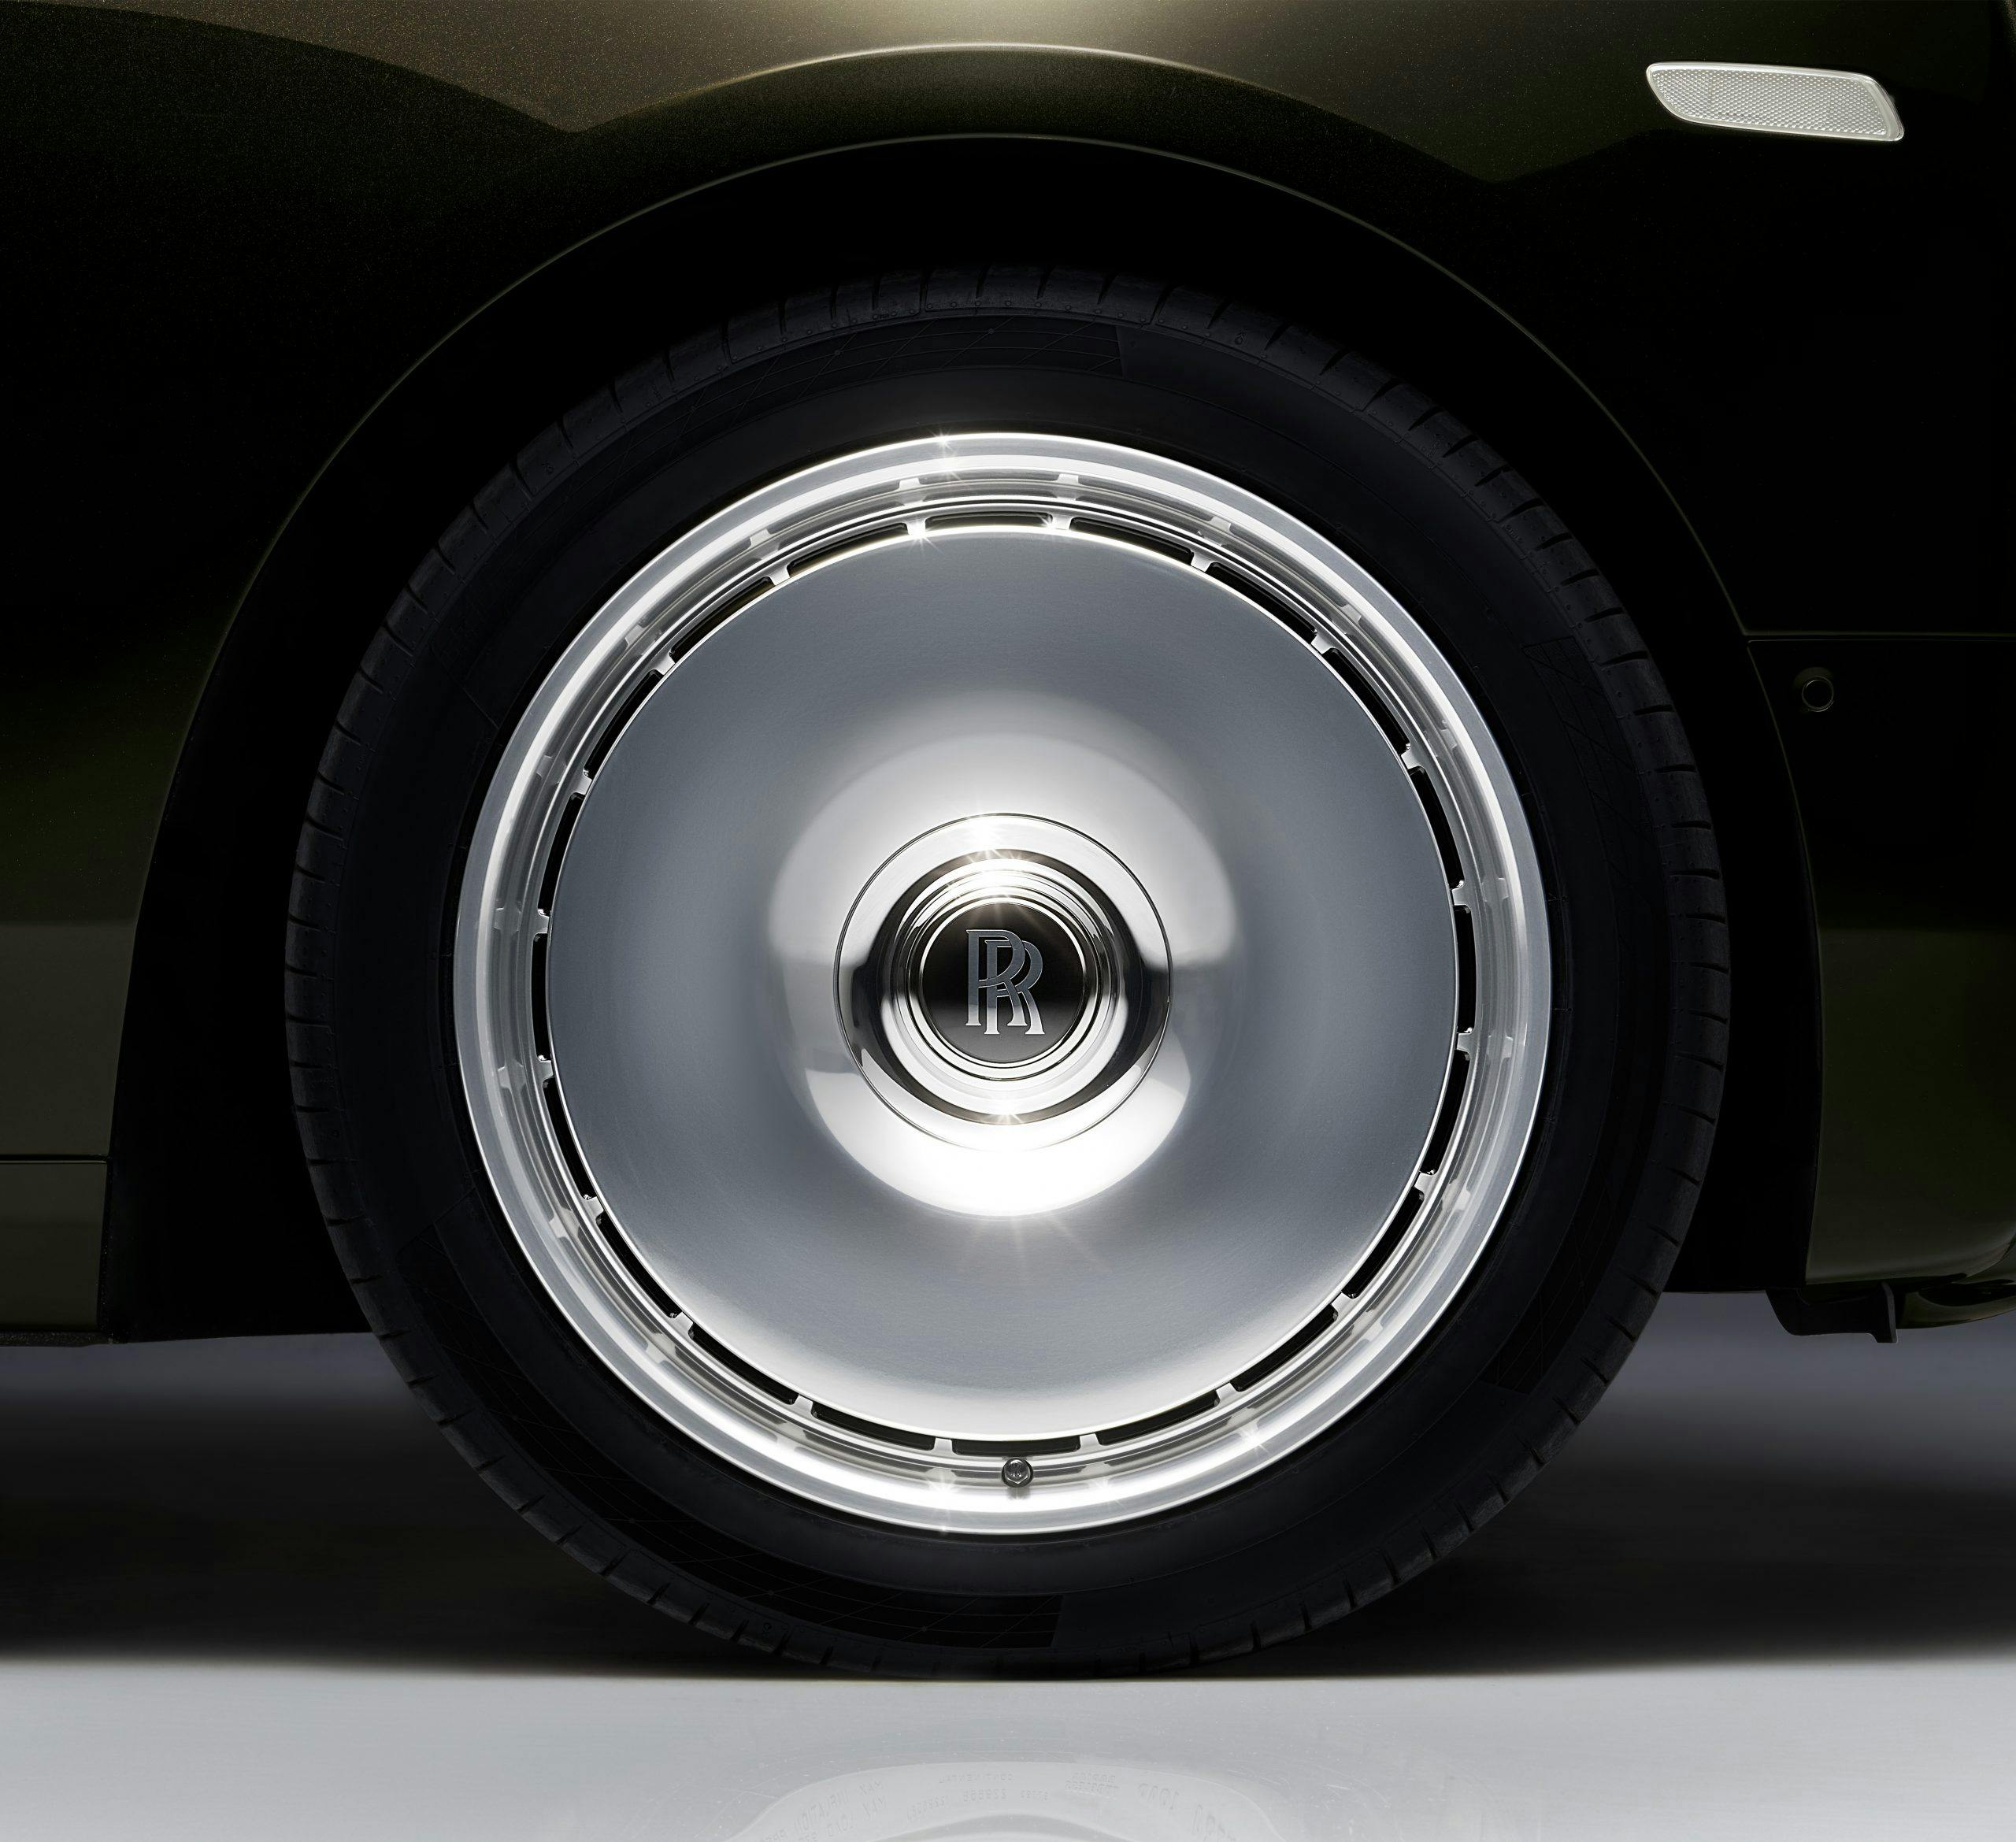 Rolls-Royce Phantom II wheel